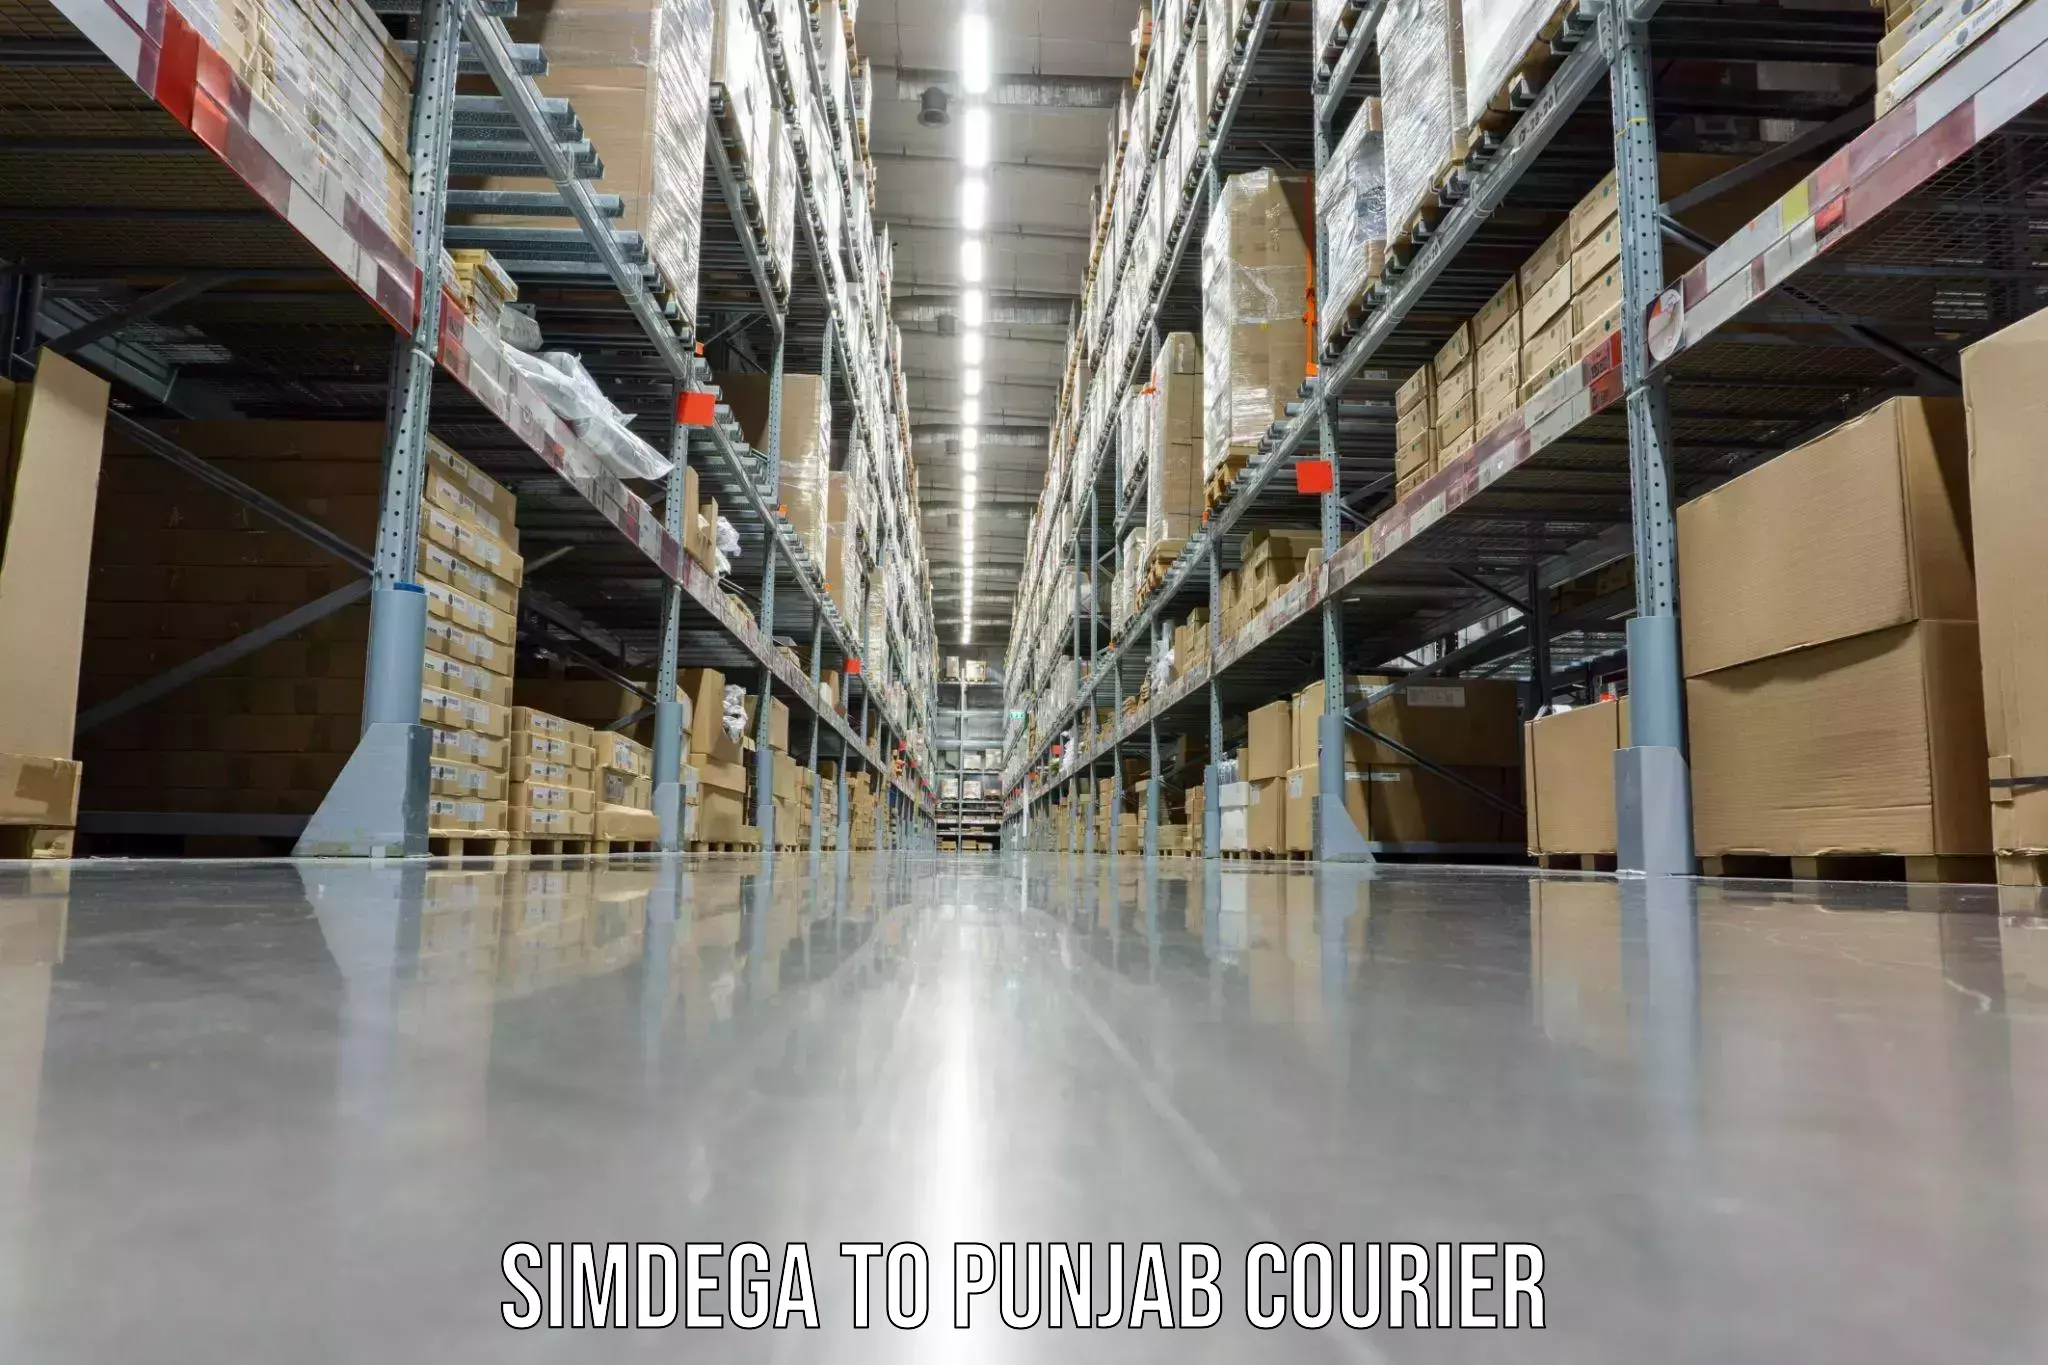 Specialized moving company Simdega to Punjab